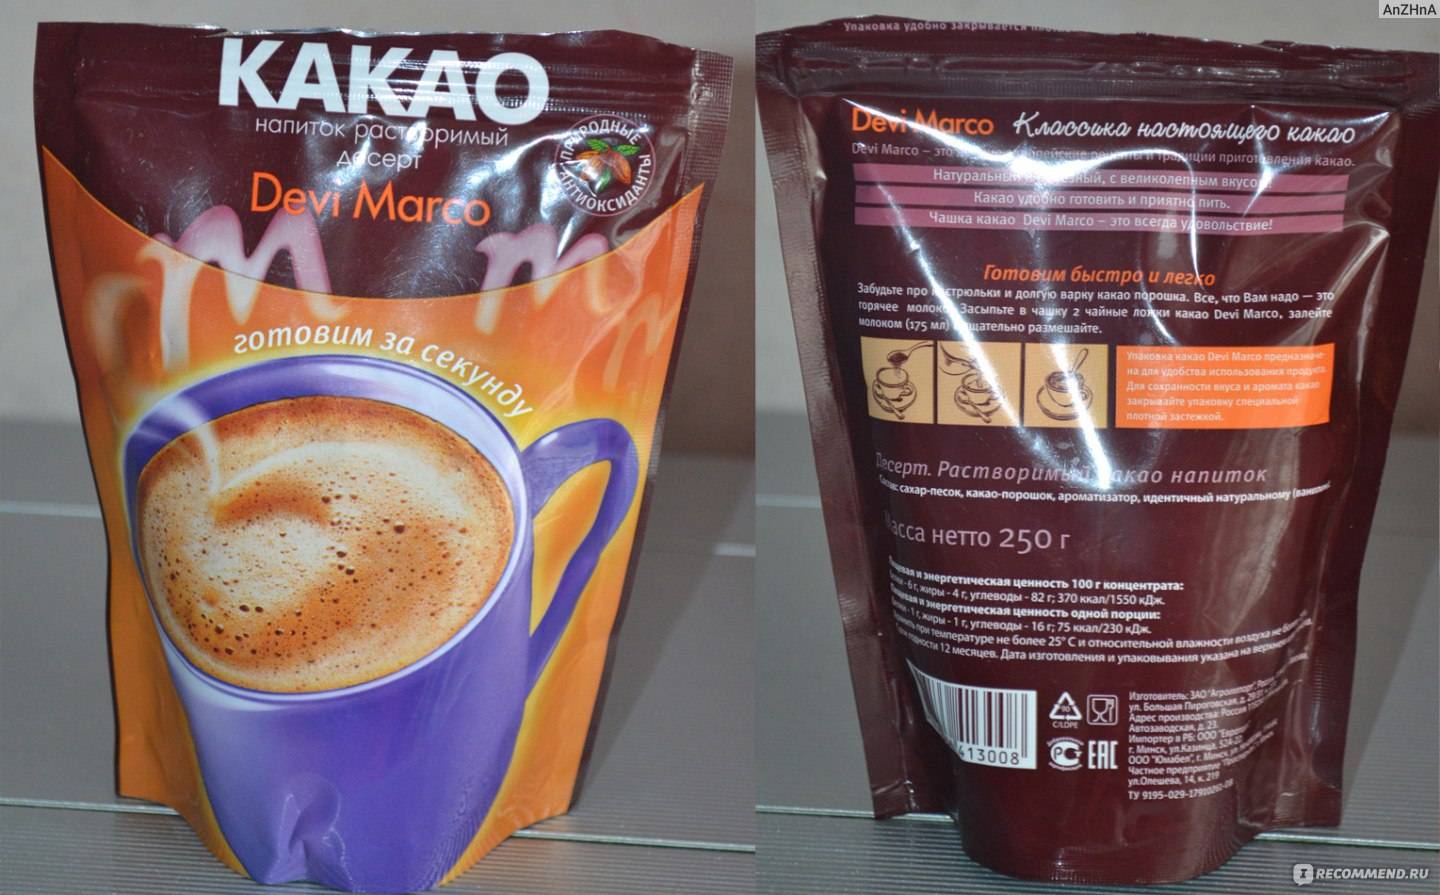 Отзывы какао devi marco быстрорастворимый » нашемнение - сайт отзывов обо всем